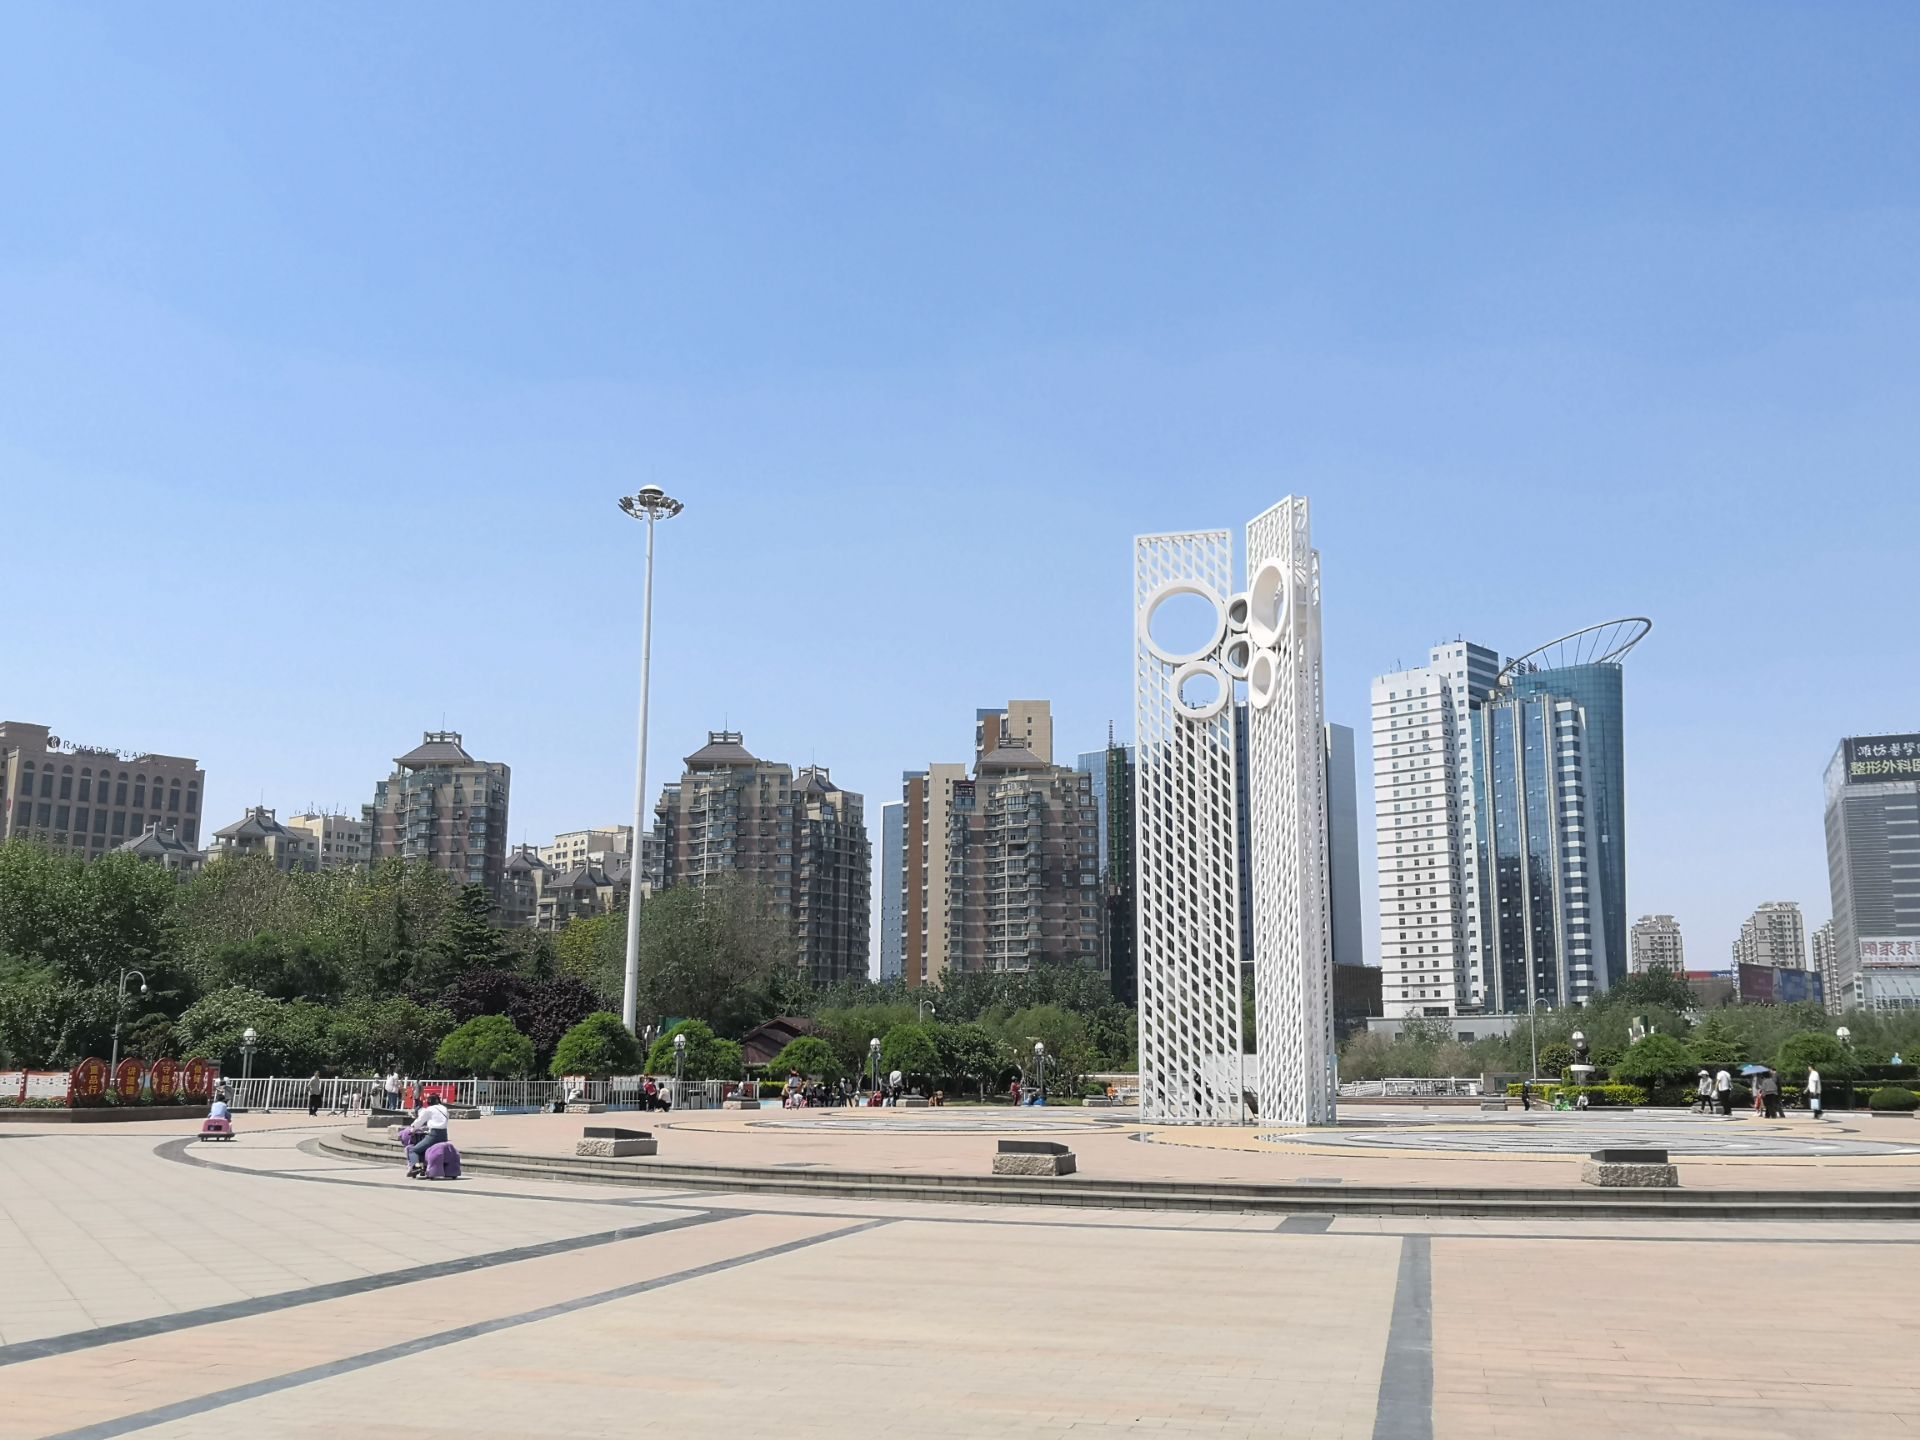 潍坊市中心风筝作为广场的主题雕塑形成广场的视觉中心和标志性景点